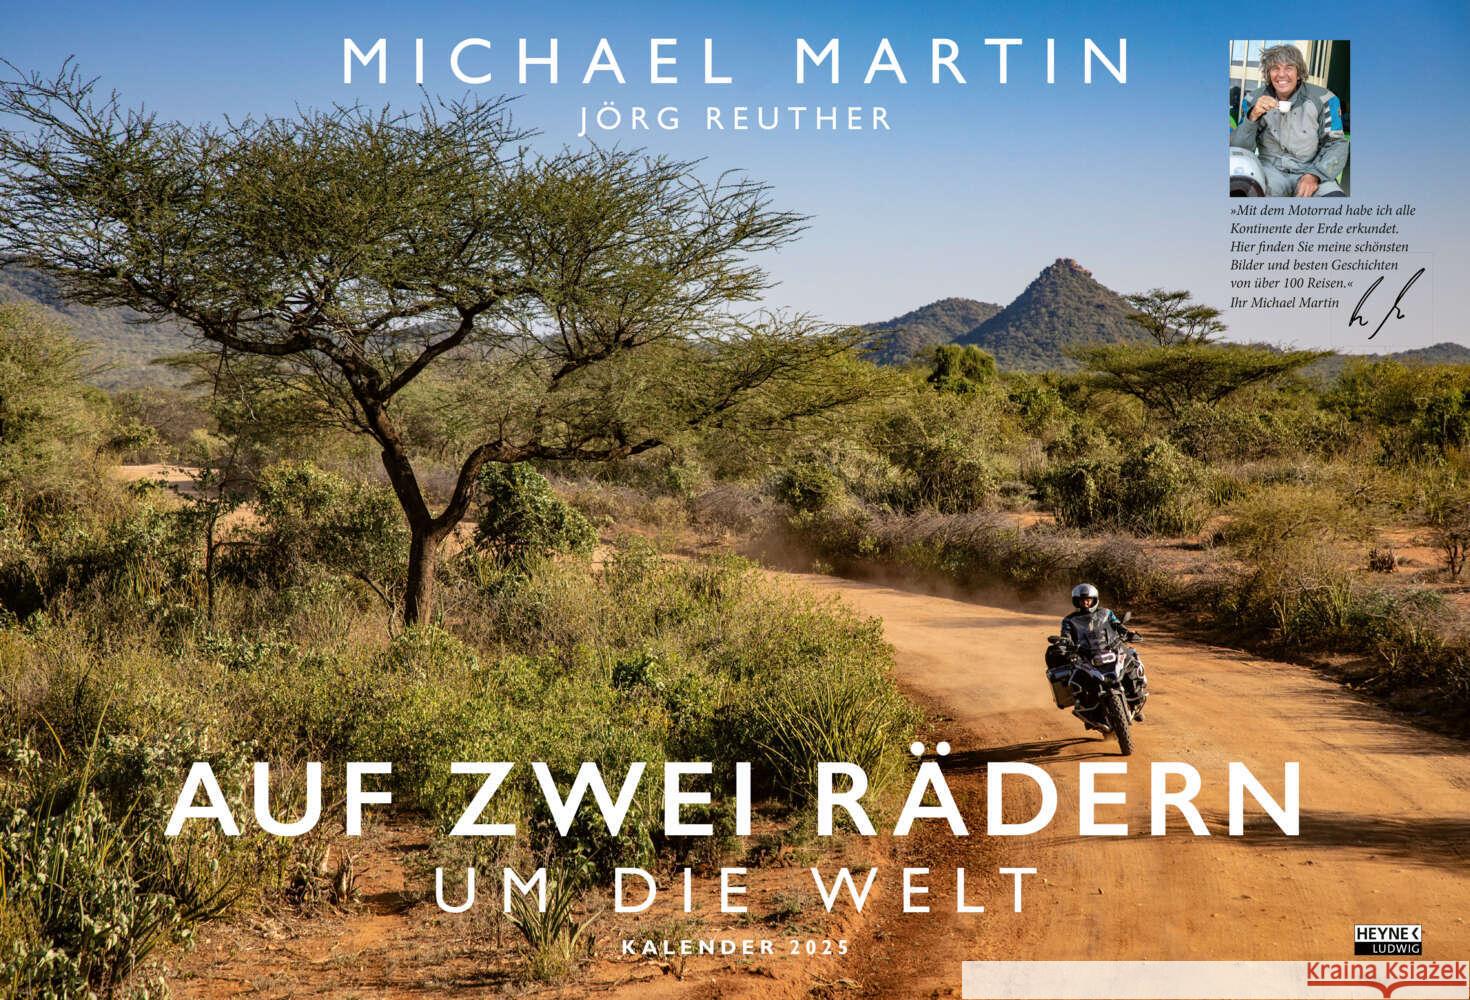 Auf zwei Rädern um die Welt - Der Motorrad-Reise-Kalender 2025 Martin, Michael 9783453239487 Ludwig bei Heyne